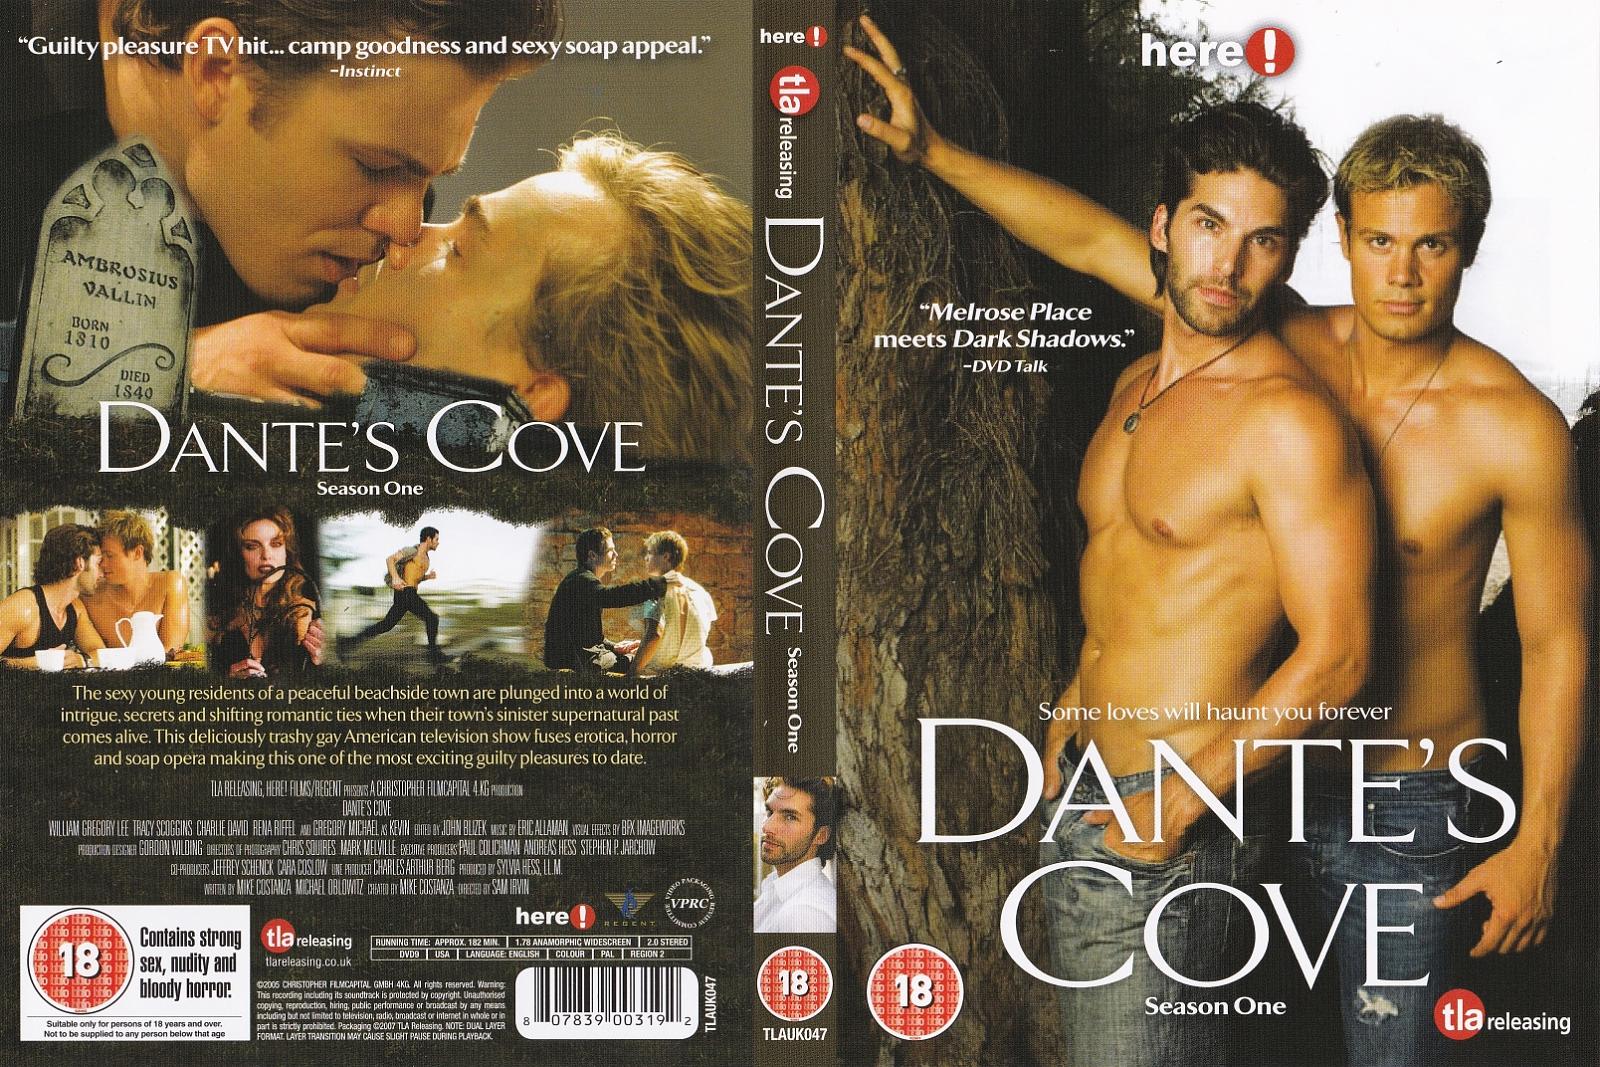 Cast of dante's cove